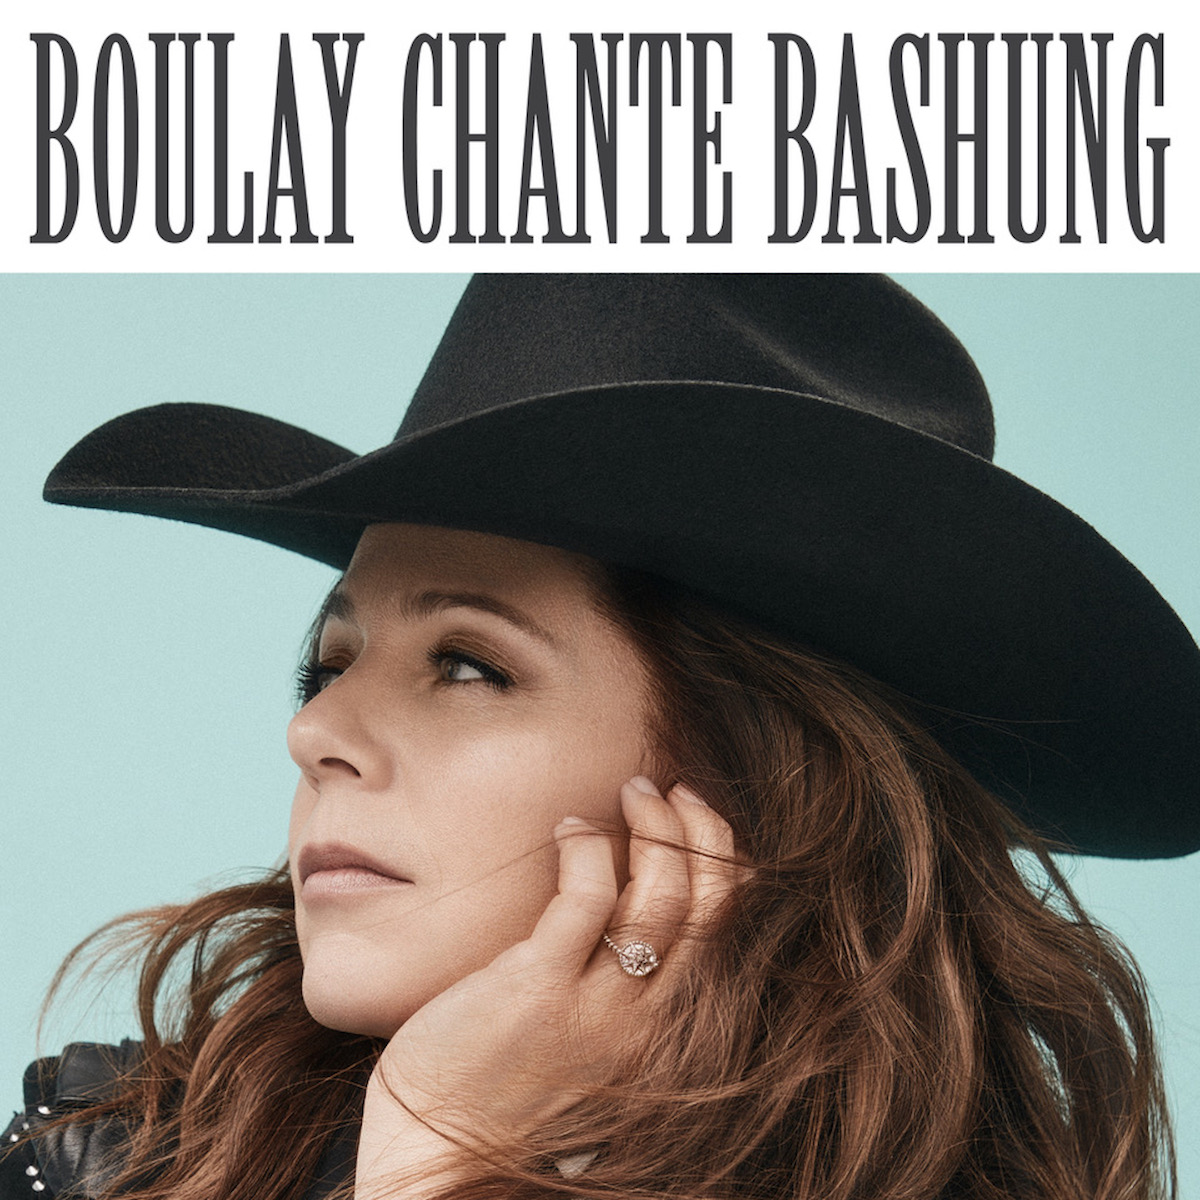 ISABELLE BOULAY: nouvel album Les chevaux du plaisir (Boulay chante Bashung) disponible